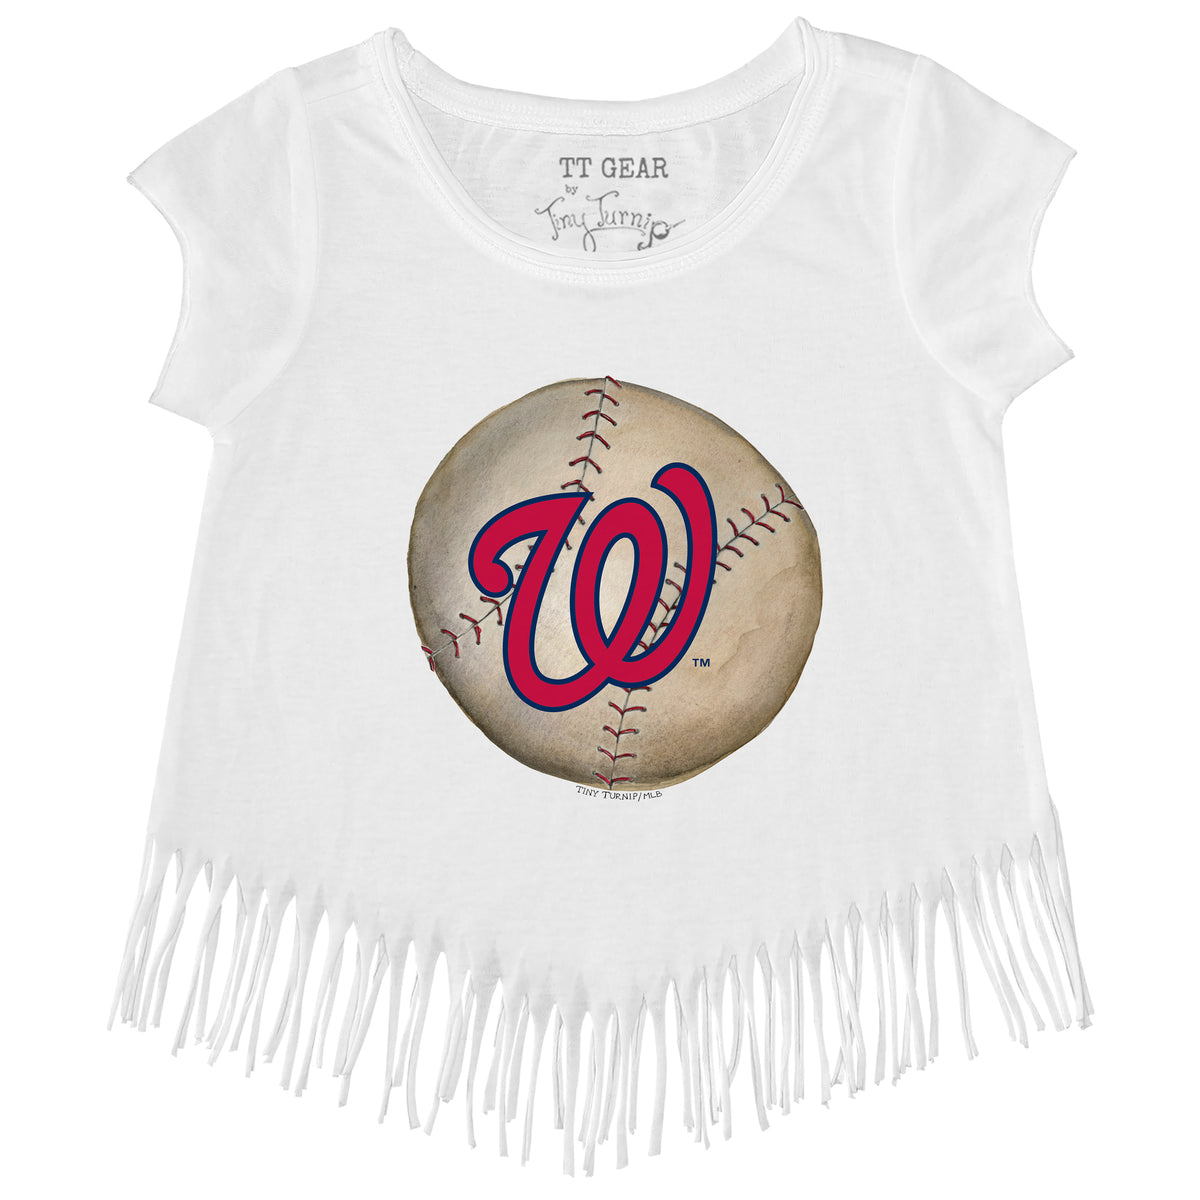 Girls Youth Tiny Turnip White Texas Rangers Peace Love Baseball Fringe T-Shirt Size: Large